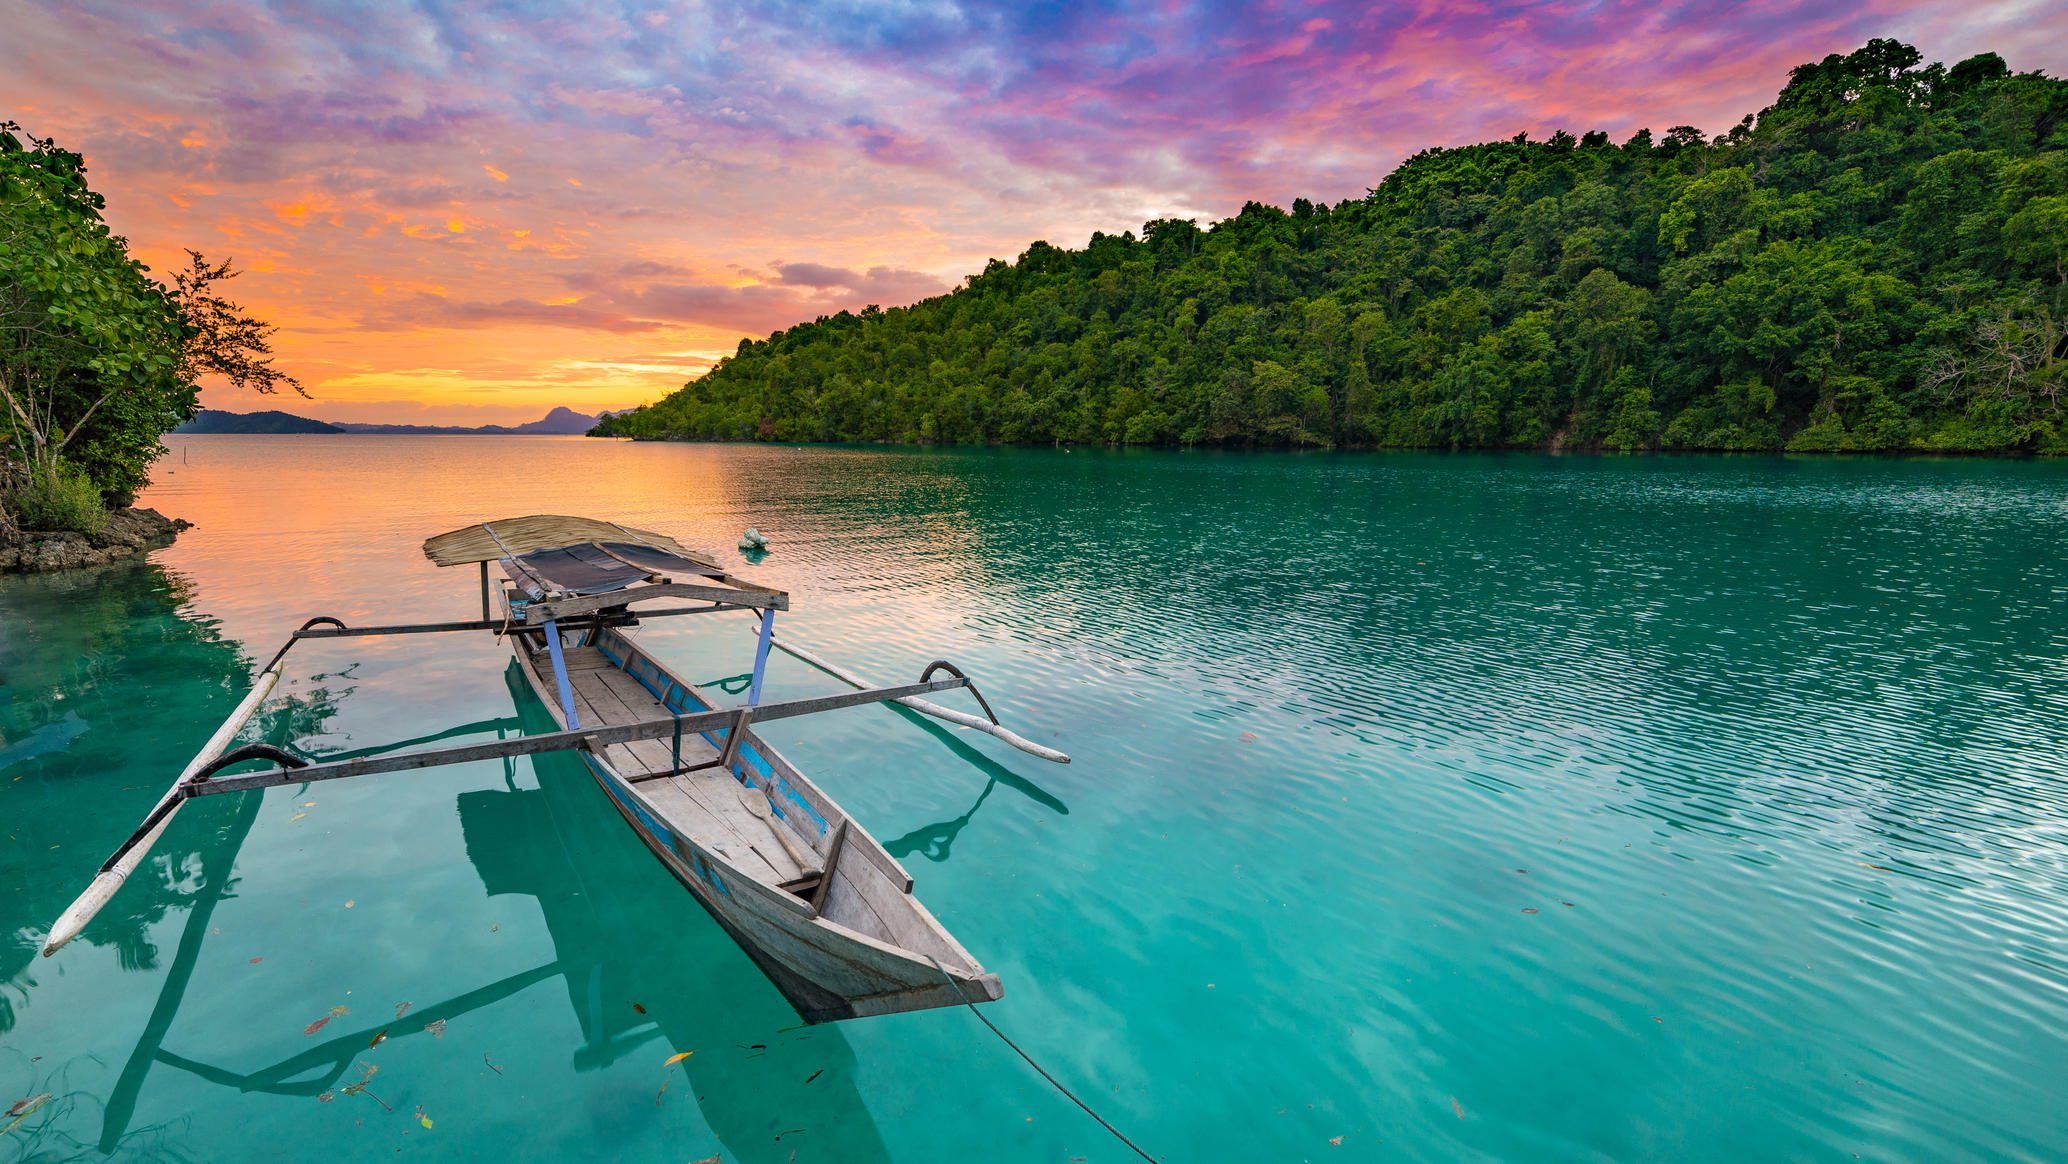 Тогеанские острова, Индонезия